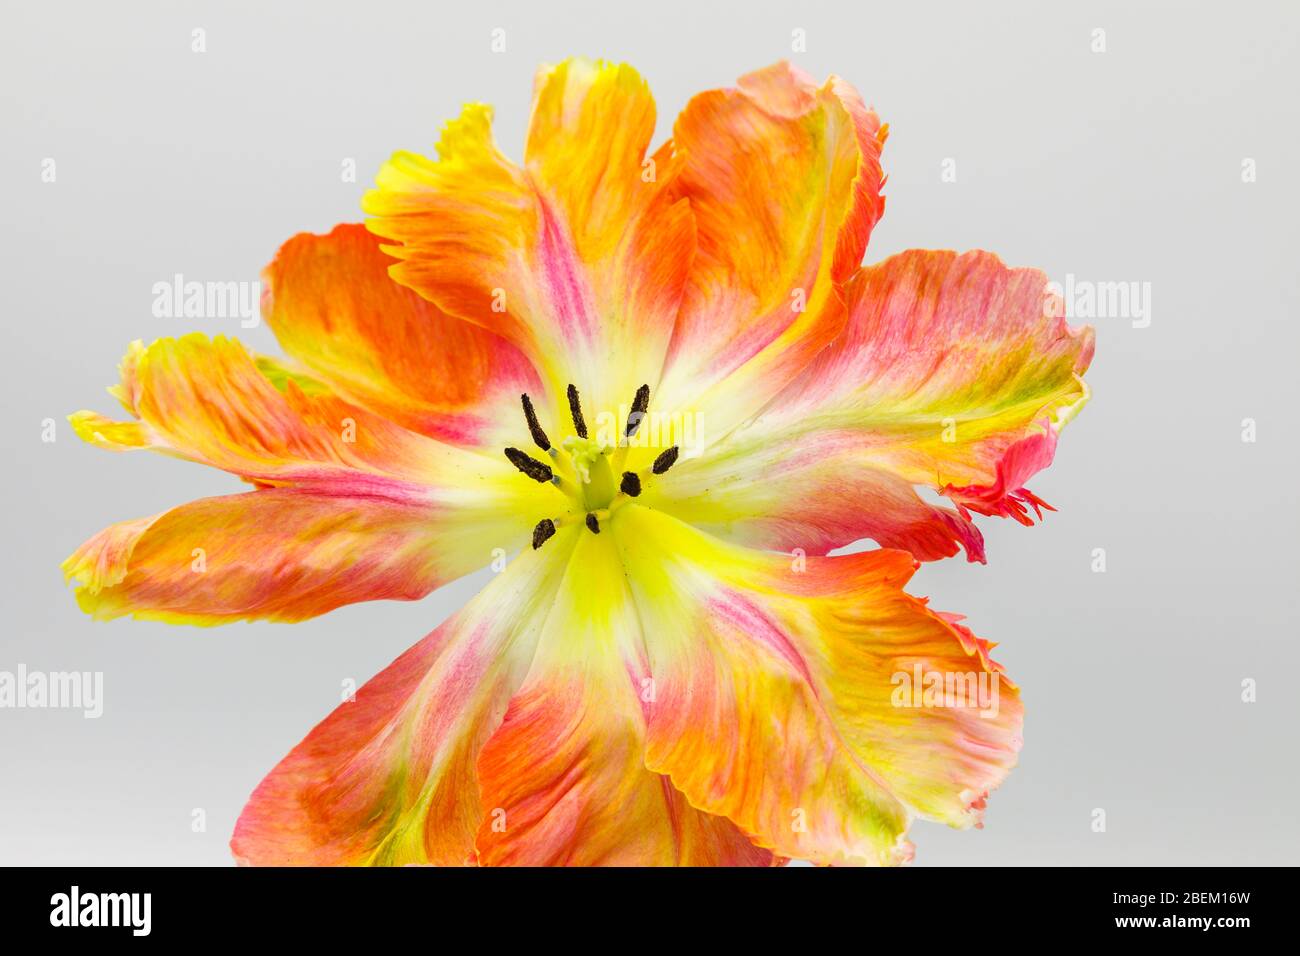 Nahaufnahme einer großen, mehrfarbigen frühlingsblühenden Aprikosen-Papageientulpe mit ihren zentralen Blütenteilen: Stempel, Stigma, Anther, Staubgefäße, Pollen Stockfoto